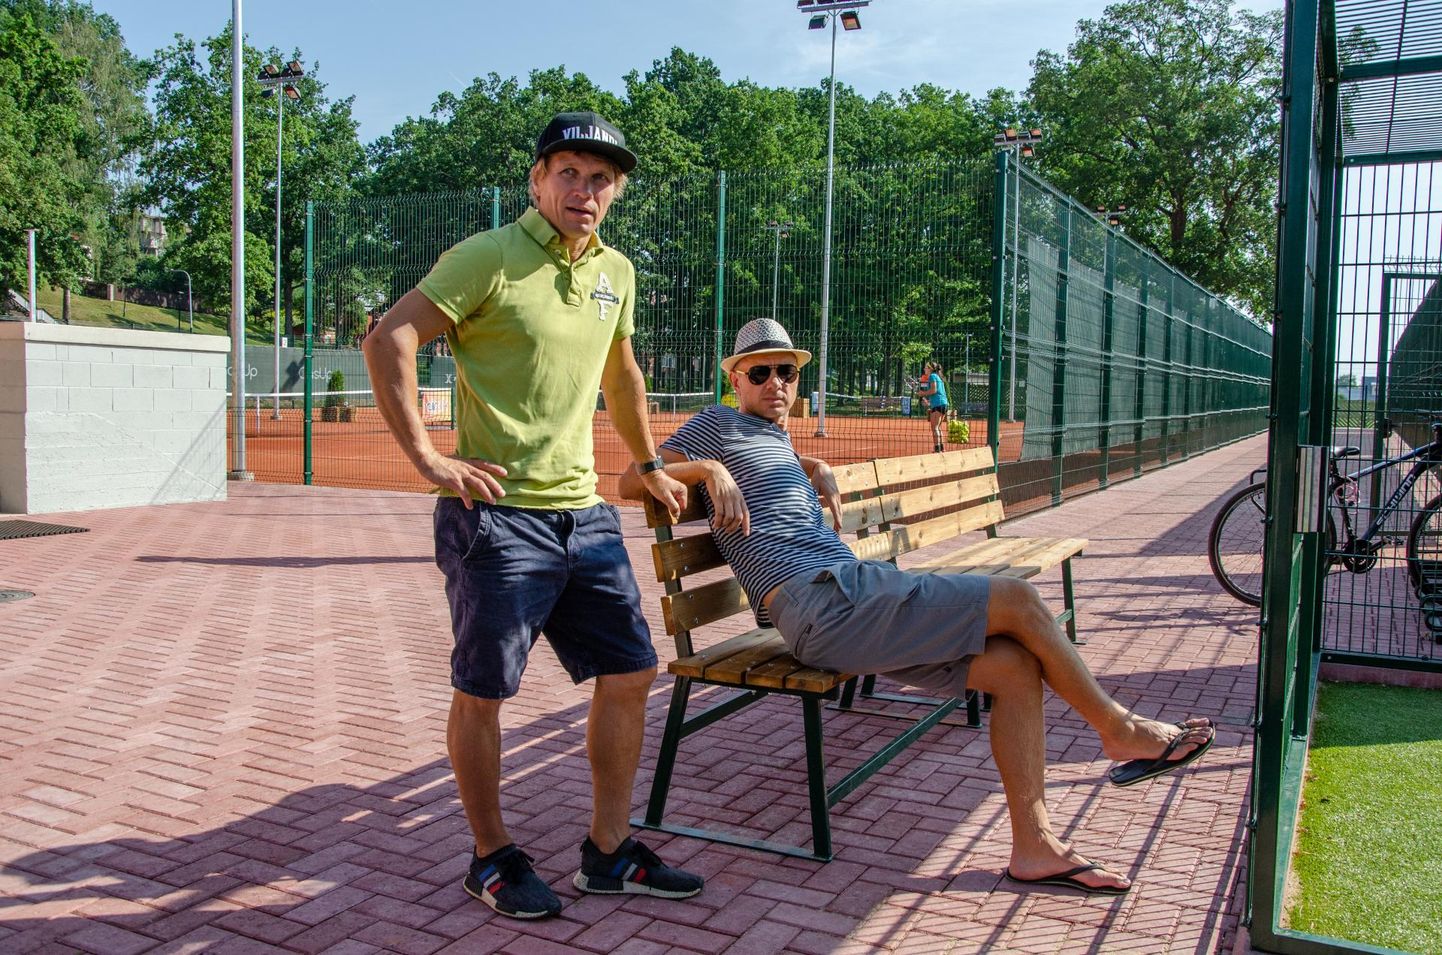 Kaks peamist Viljandi tennisekeskuse renoveerimise eestvedajat olid ettevõtja ja spordientusiast Mark Orav (vasakul) ja treener Ott Ahonen. Nende sõnul loob värske sisu ja kuue saanud keskus uusi võimalusi kogu järveäärsele piirkonnale.